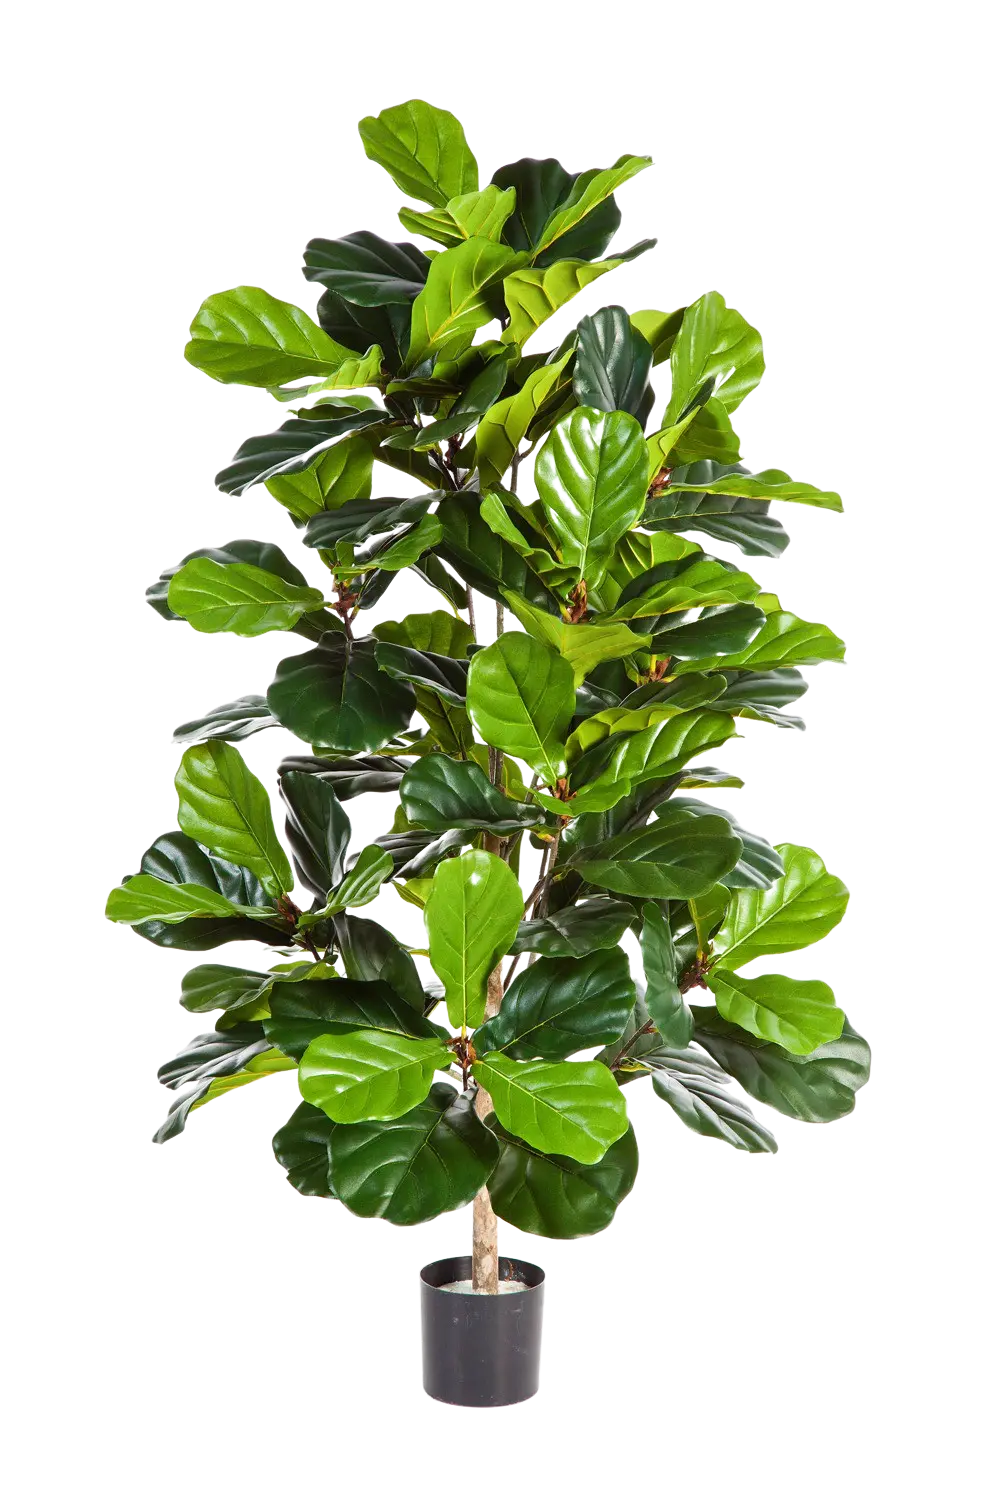 Künstlicher Ficus Lyrata - Lina auf transparentem Hintergrund mit echt wirkenden Kunstblättern. Diese Kunstpflanze gehört zur Gattung/Familie der "Geigenfeigen" bzw. "Kunst-Geigenfeigen".